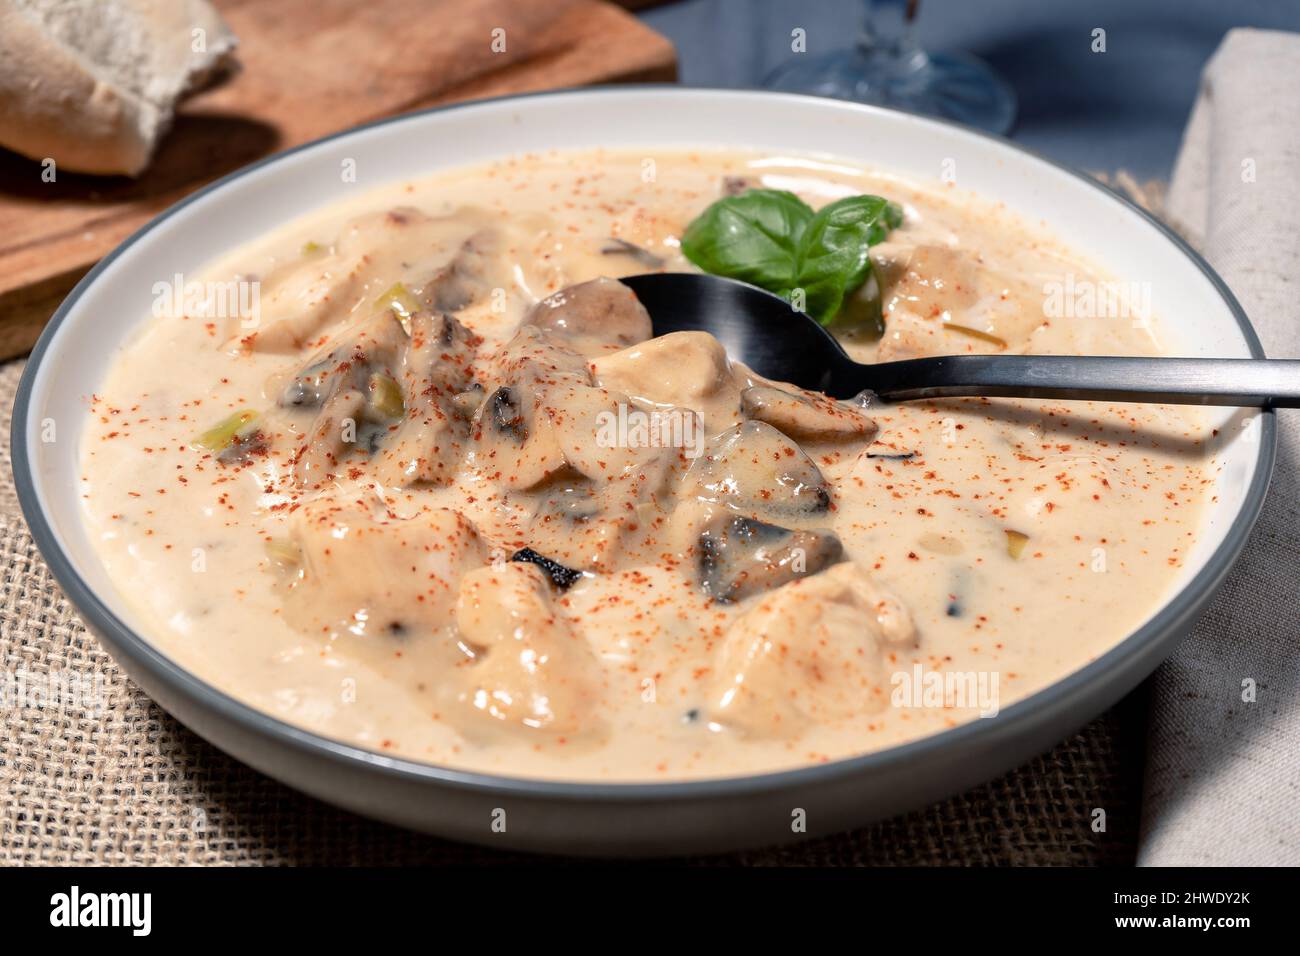 Une soupe de poulet et de champignons maison ou un fricassée de poulet à la française, dans un bol à soupe sur une table en bois. Vue en hauteur. Banque D'Images